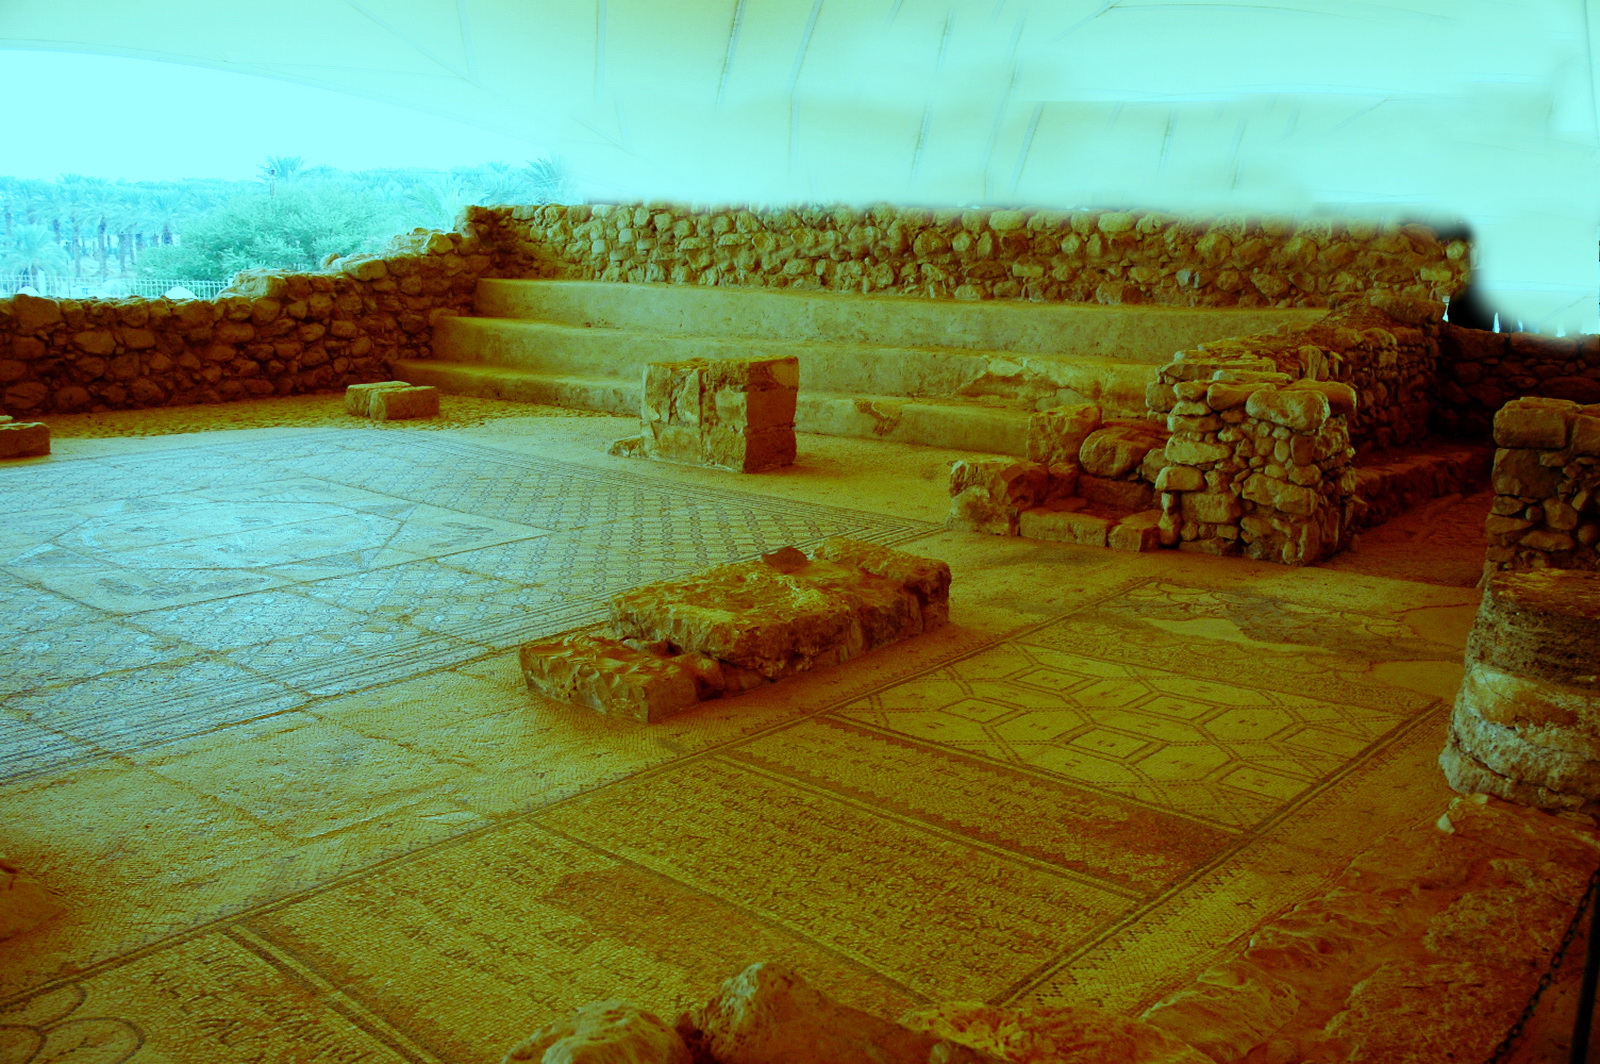 בית הכנסת בעין גדי - פסיפס הרצפה - כתובות ועיטורים